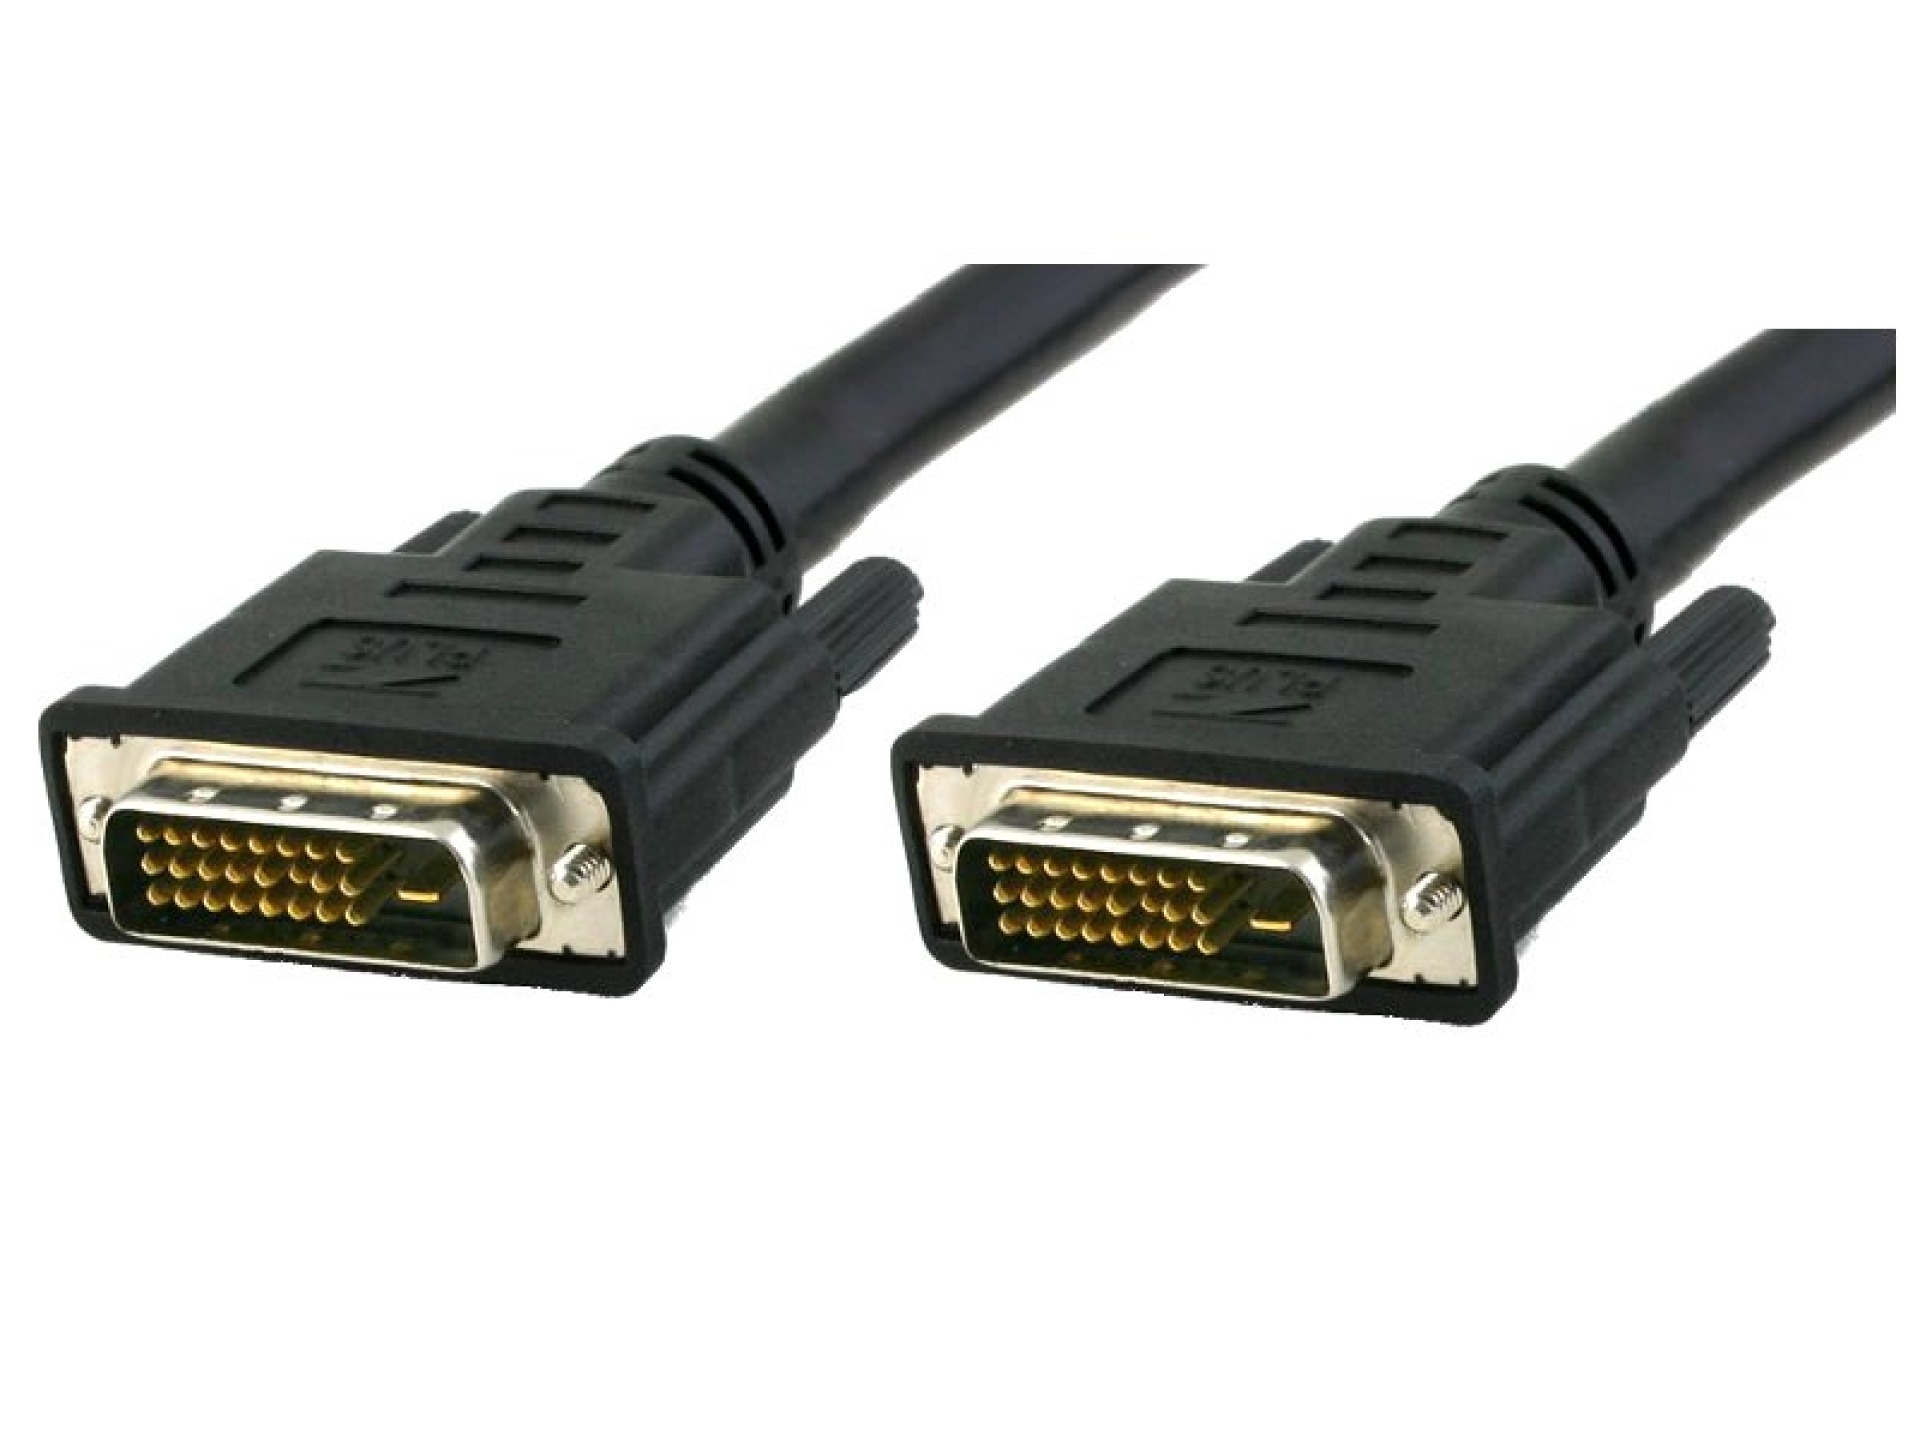 DVI-D Dual-Link Anschlusskabel Stecker/Stecker, schwarz, 10 m